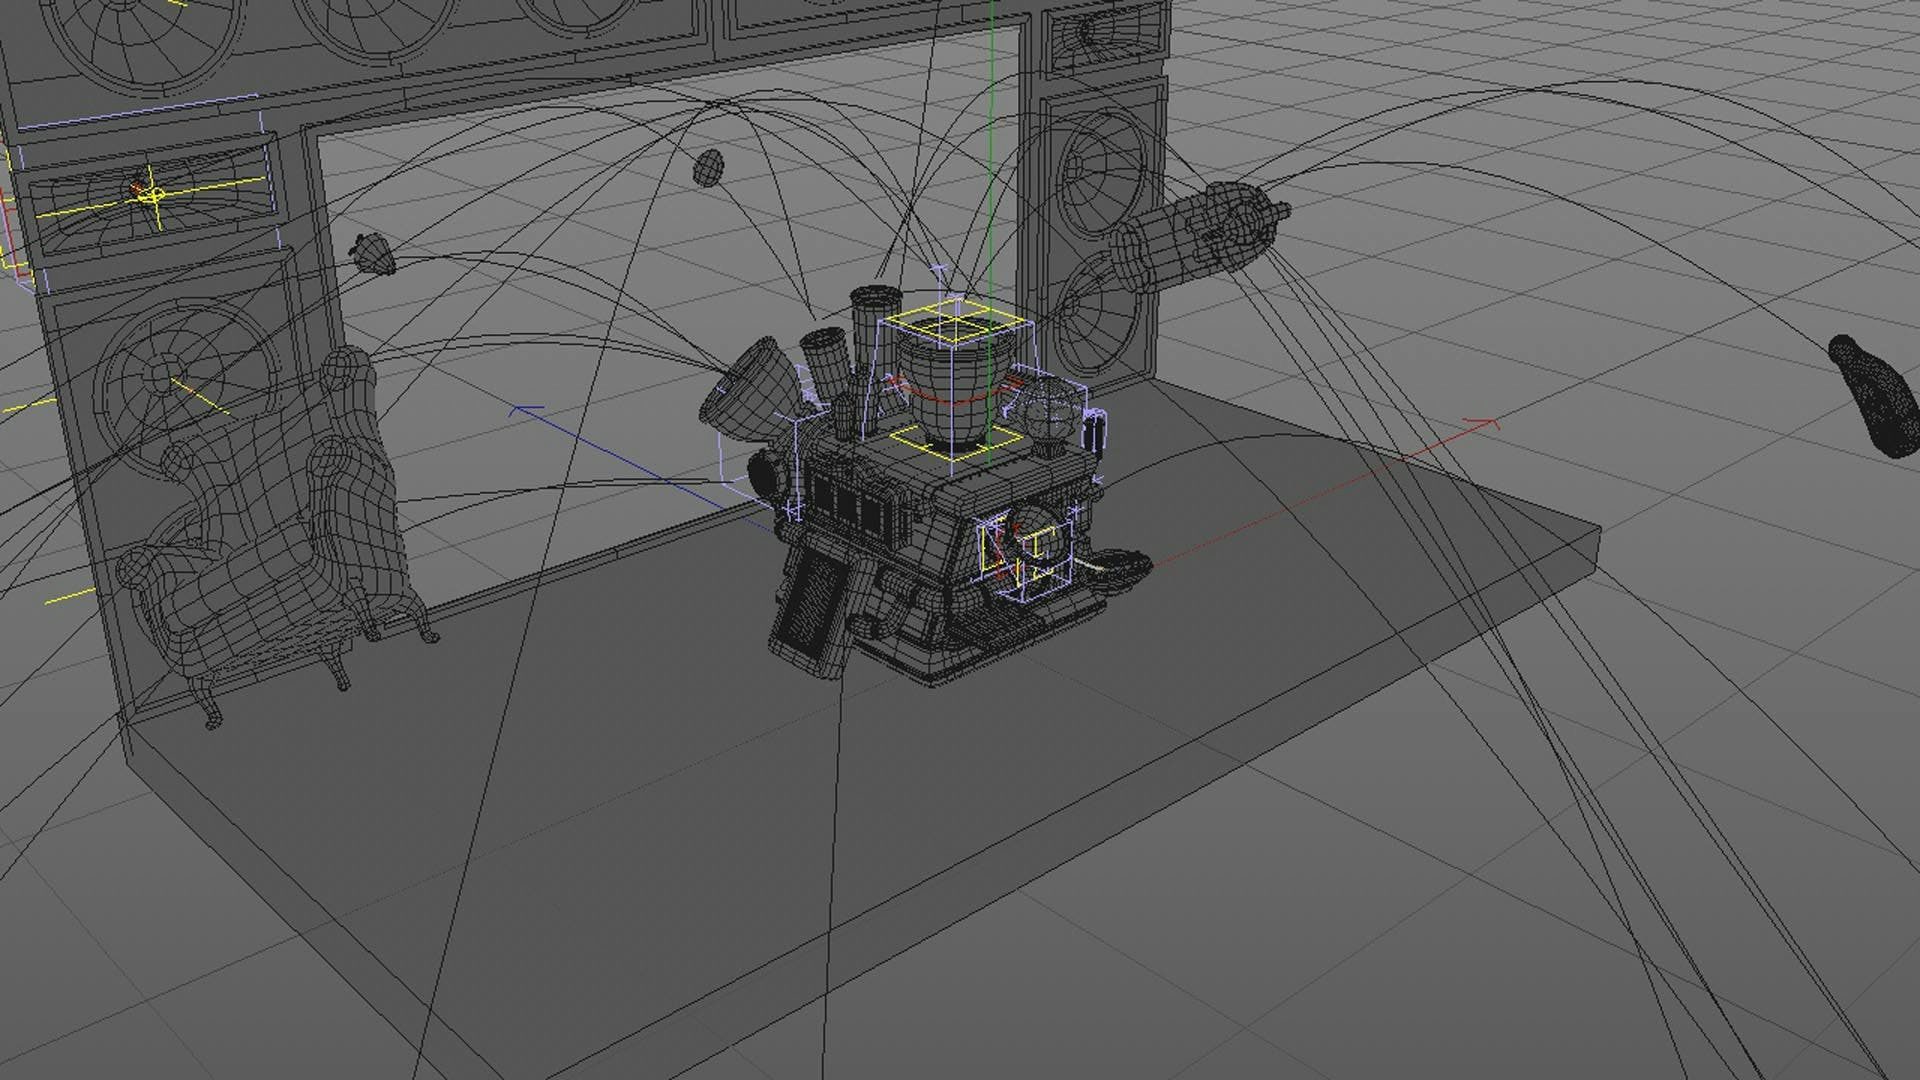 Skärmdump från Cinema 4D. Maskinen står mitt på scenen med 3D-banor som visar banan för de föremål som flyger.